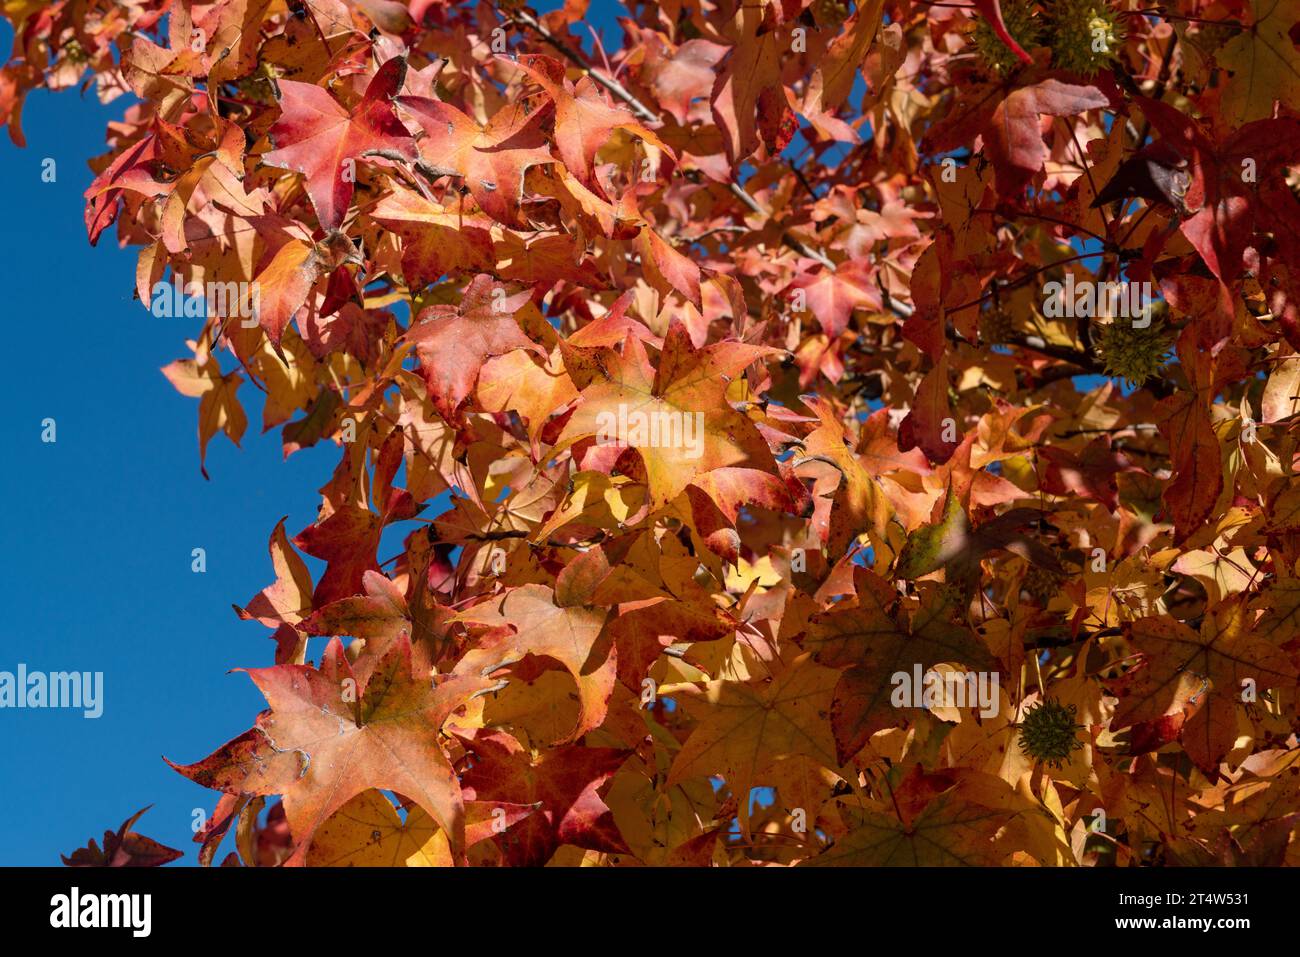 Rote Blätter, Herbstsaison, die Blätter der Bäume werden gelb oder rot und geben warme und herbstliche Farben, die alles schön machen mit vielen warmen Re Stockfoto